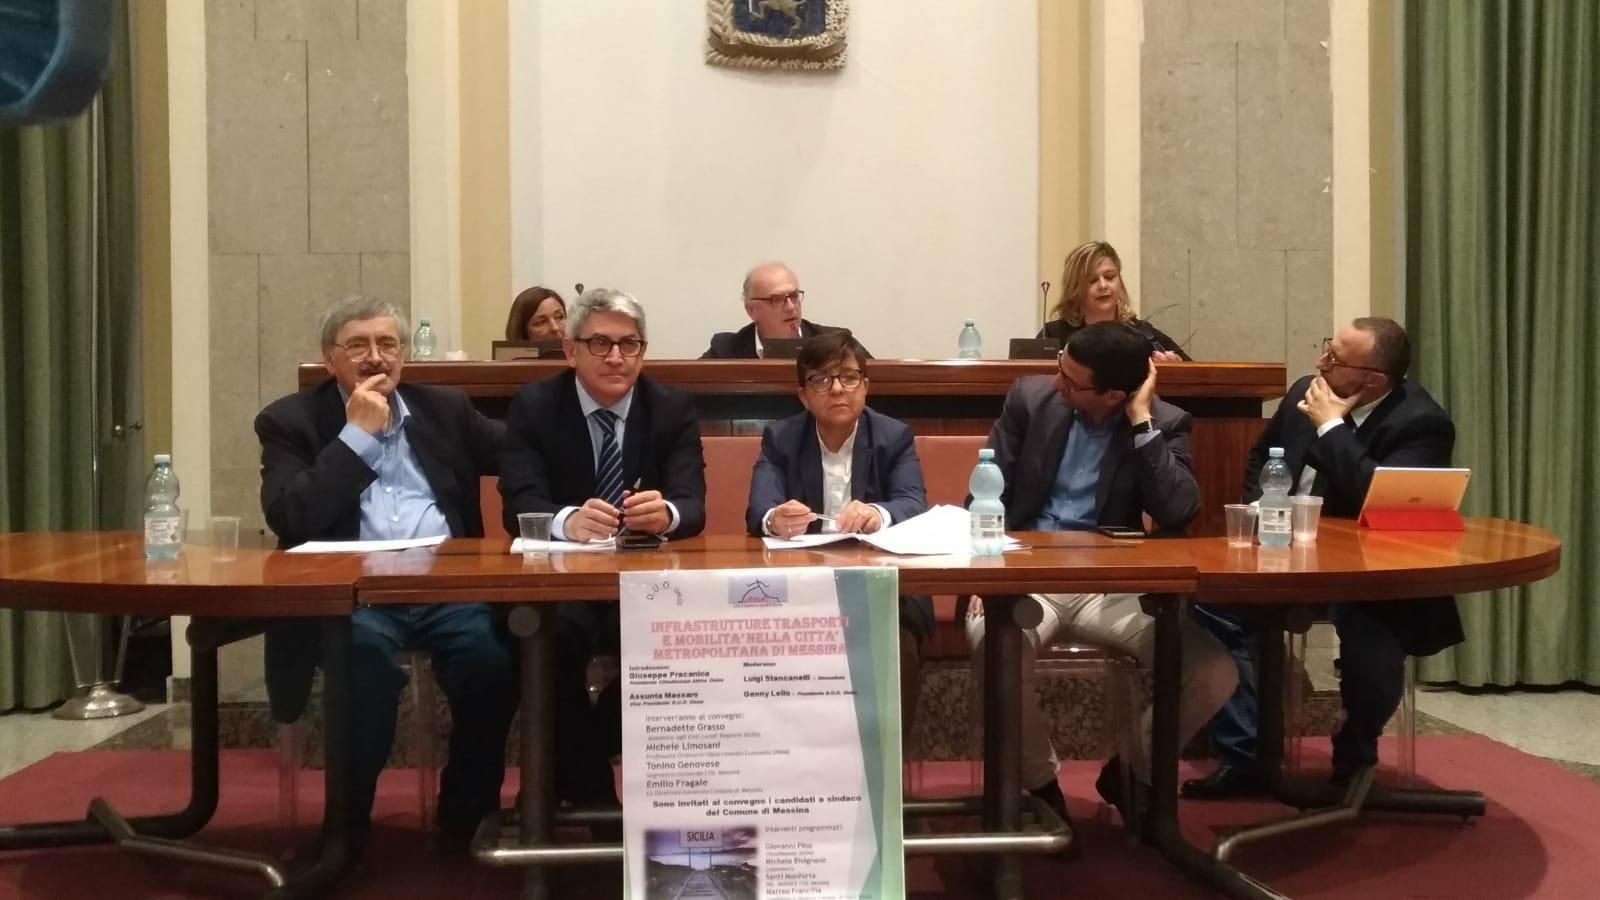 Trasporti e infrastrutture, incontro con l'assessore Grasso e i candidati sindaco alla Città Metropolitana